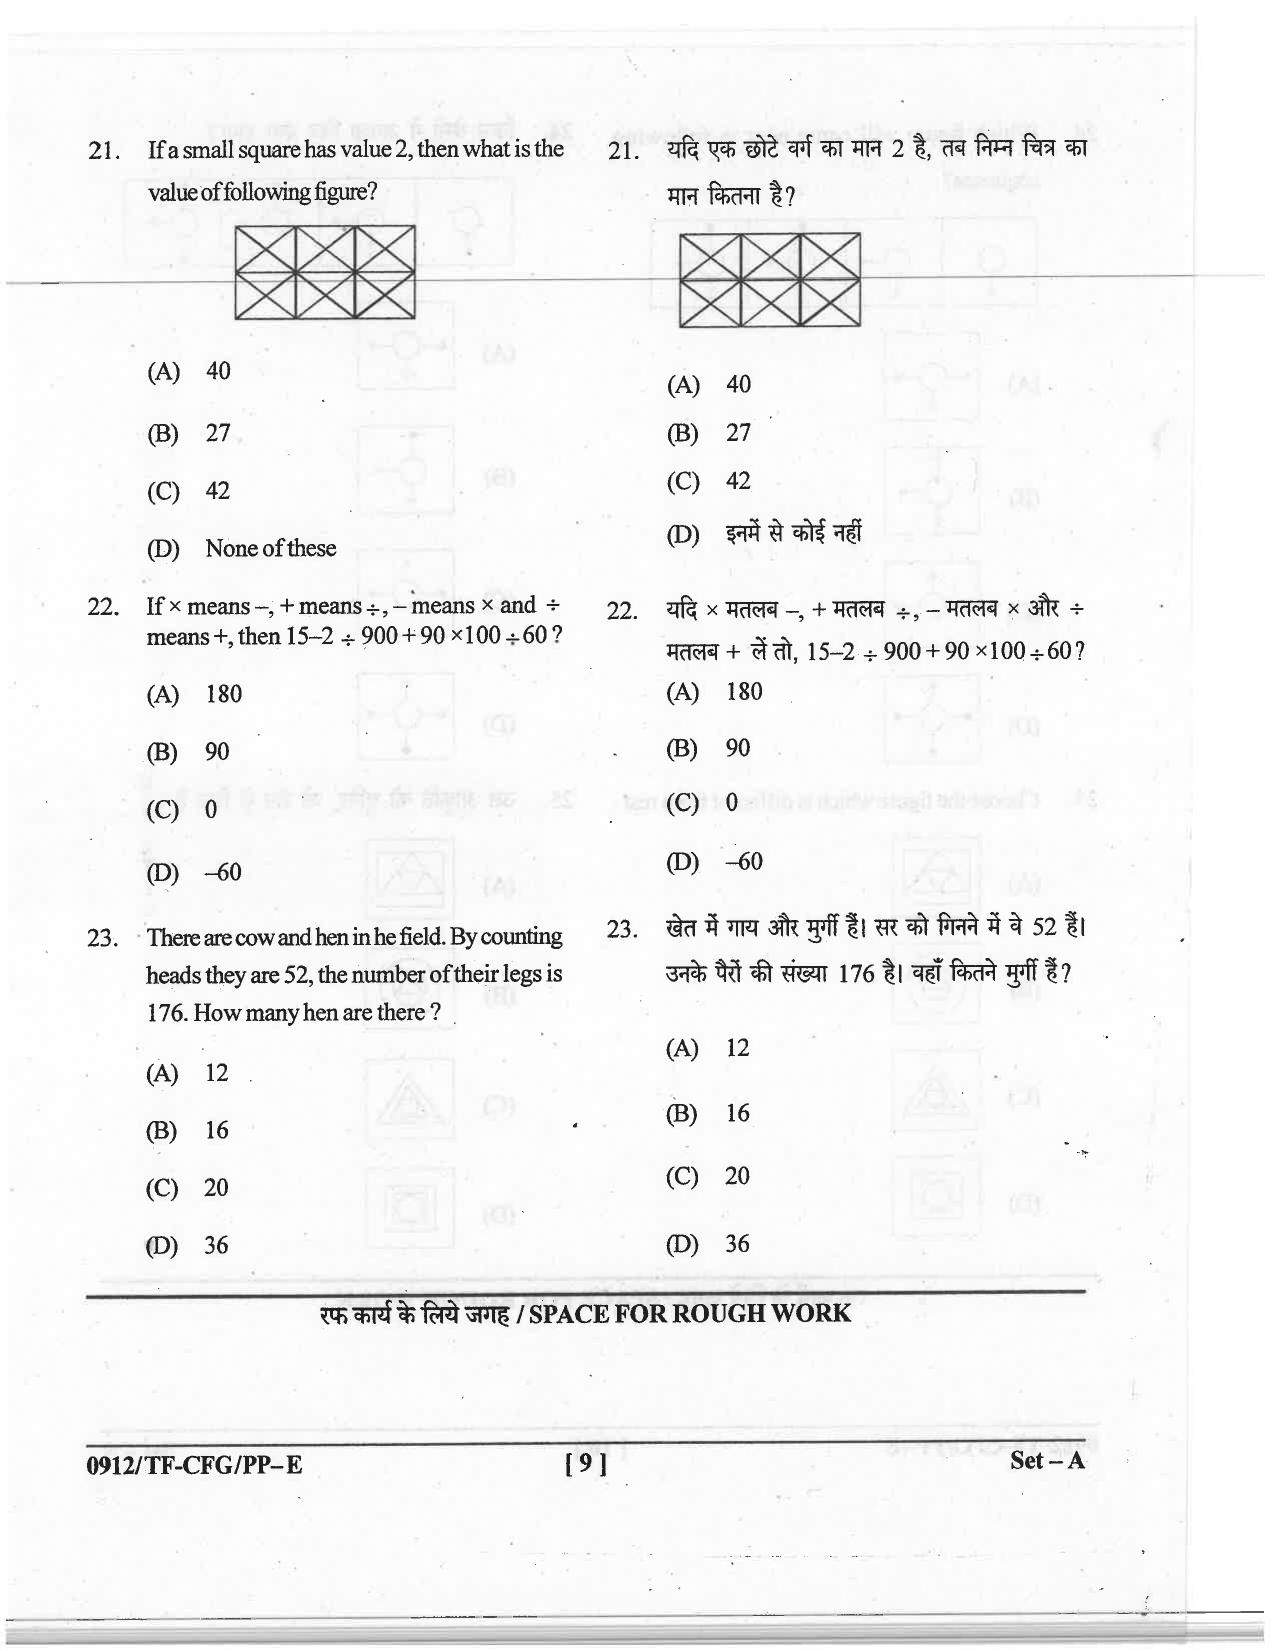 CG Pre B.A B.Ed / Pre B.Sc. B.Ed 2019 Question Paper - Page 9